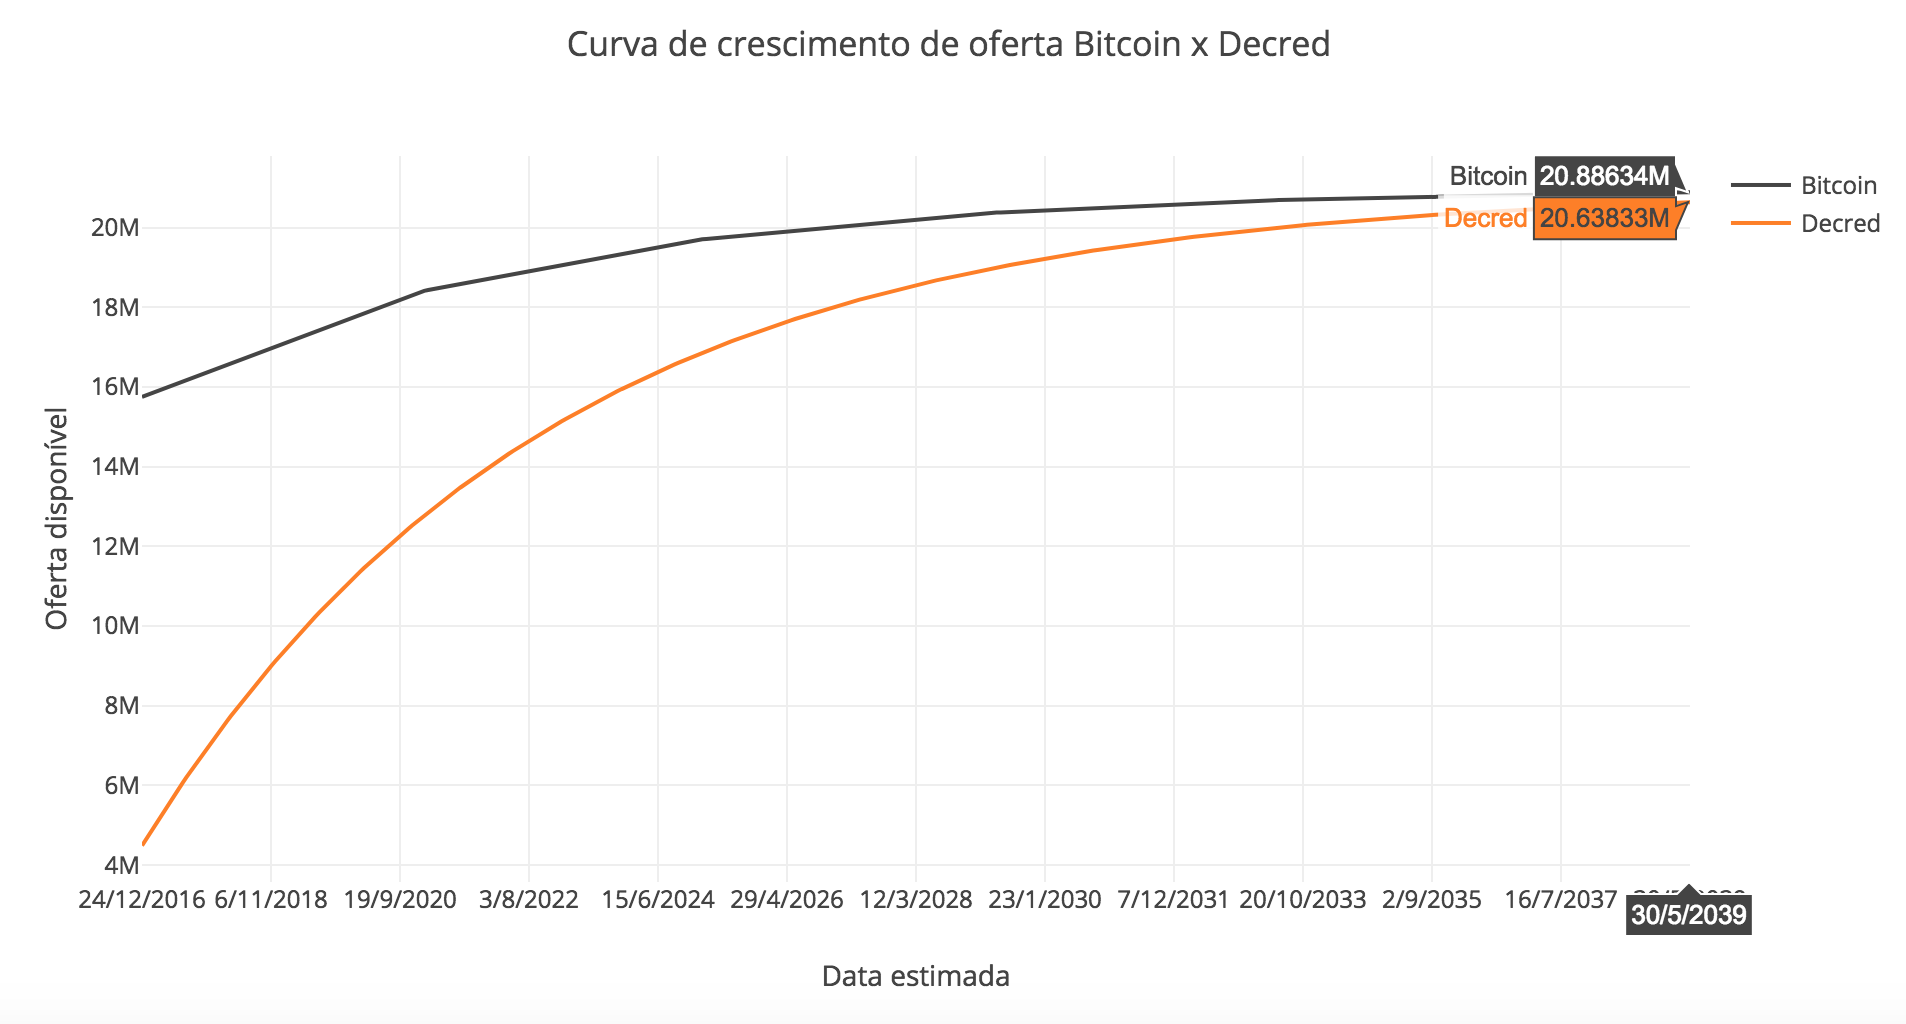 Figura 8 - Comparação aproximada entre a curva de crescimento da oferta de Decred x Bitcoin